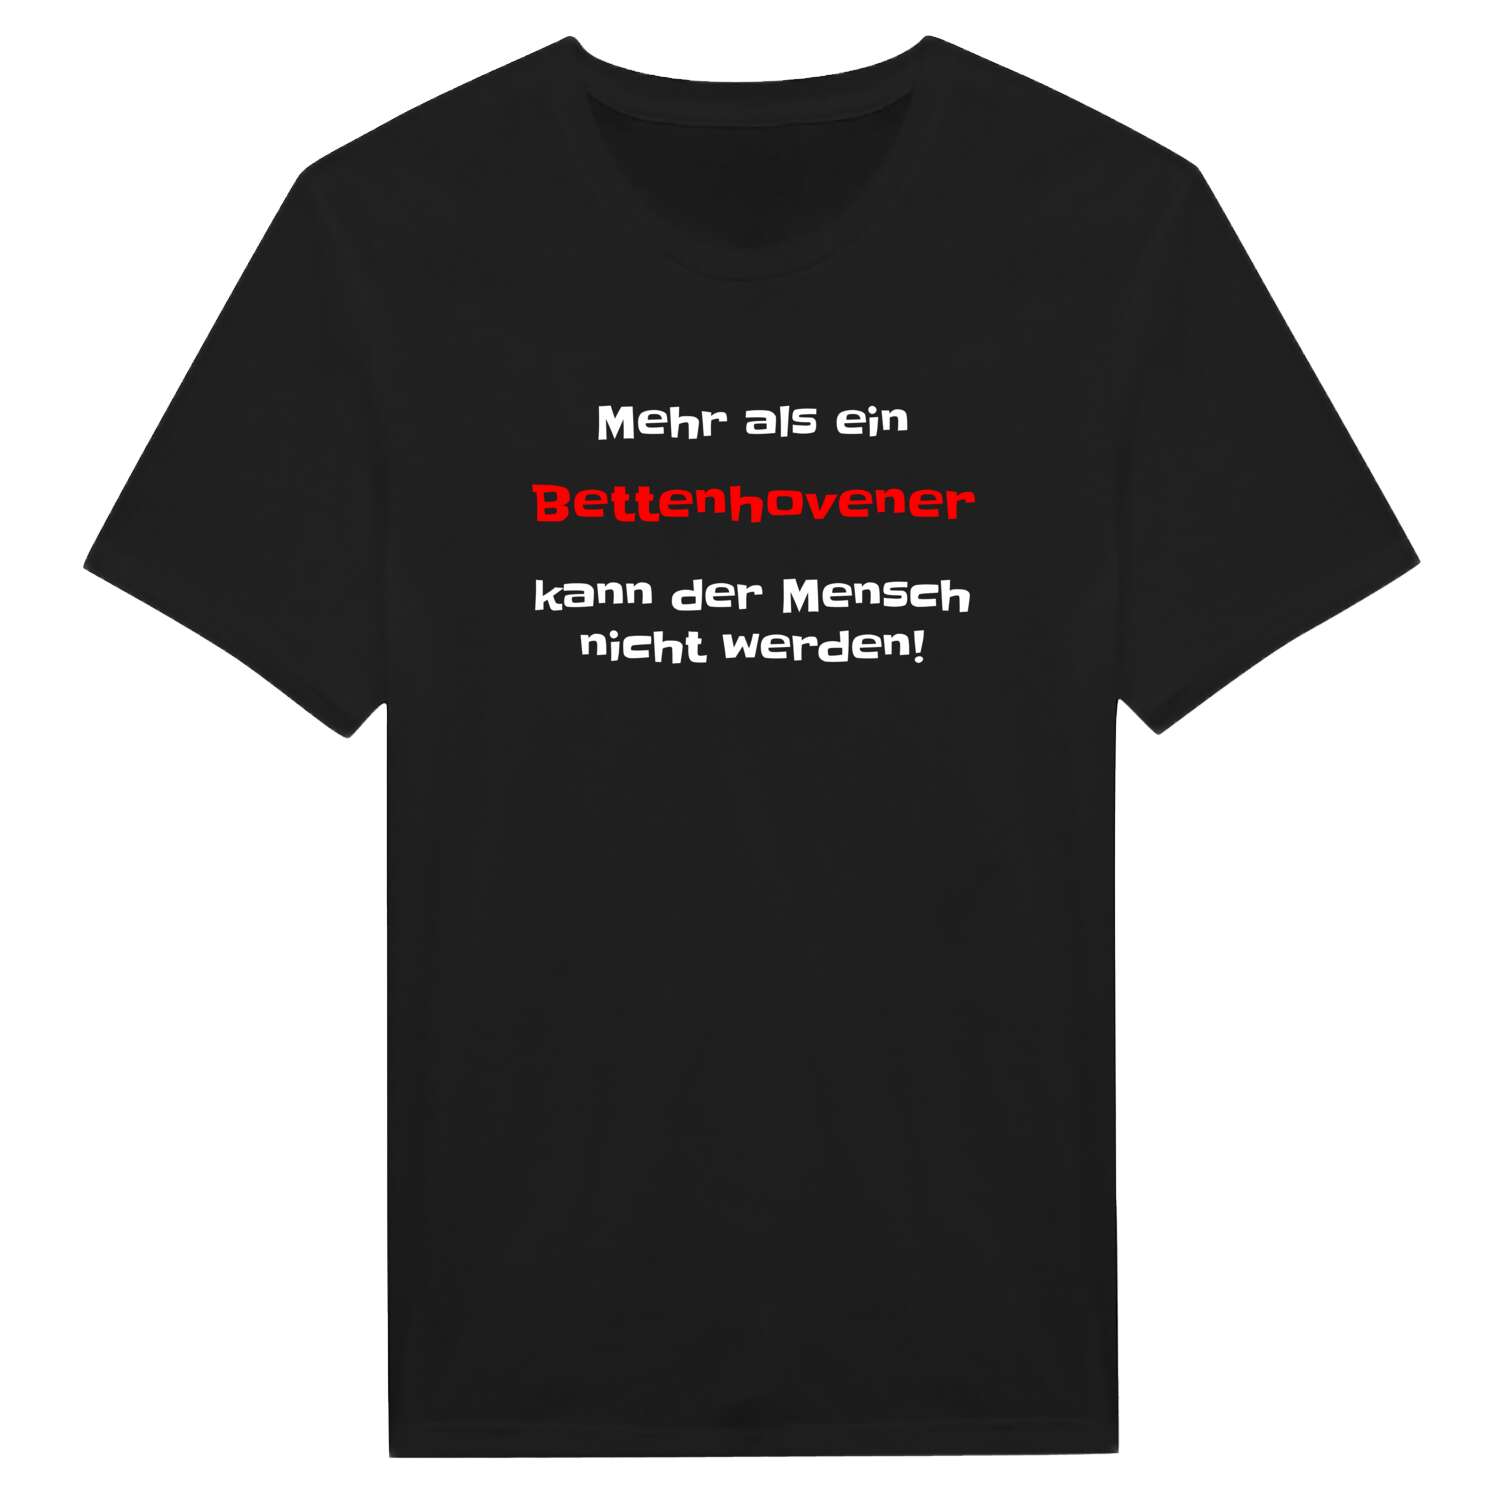 Bettenhoven T-Shirt »Mehr als ein«